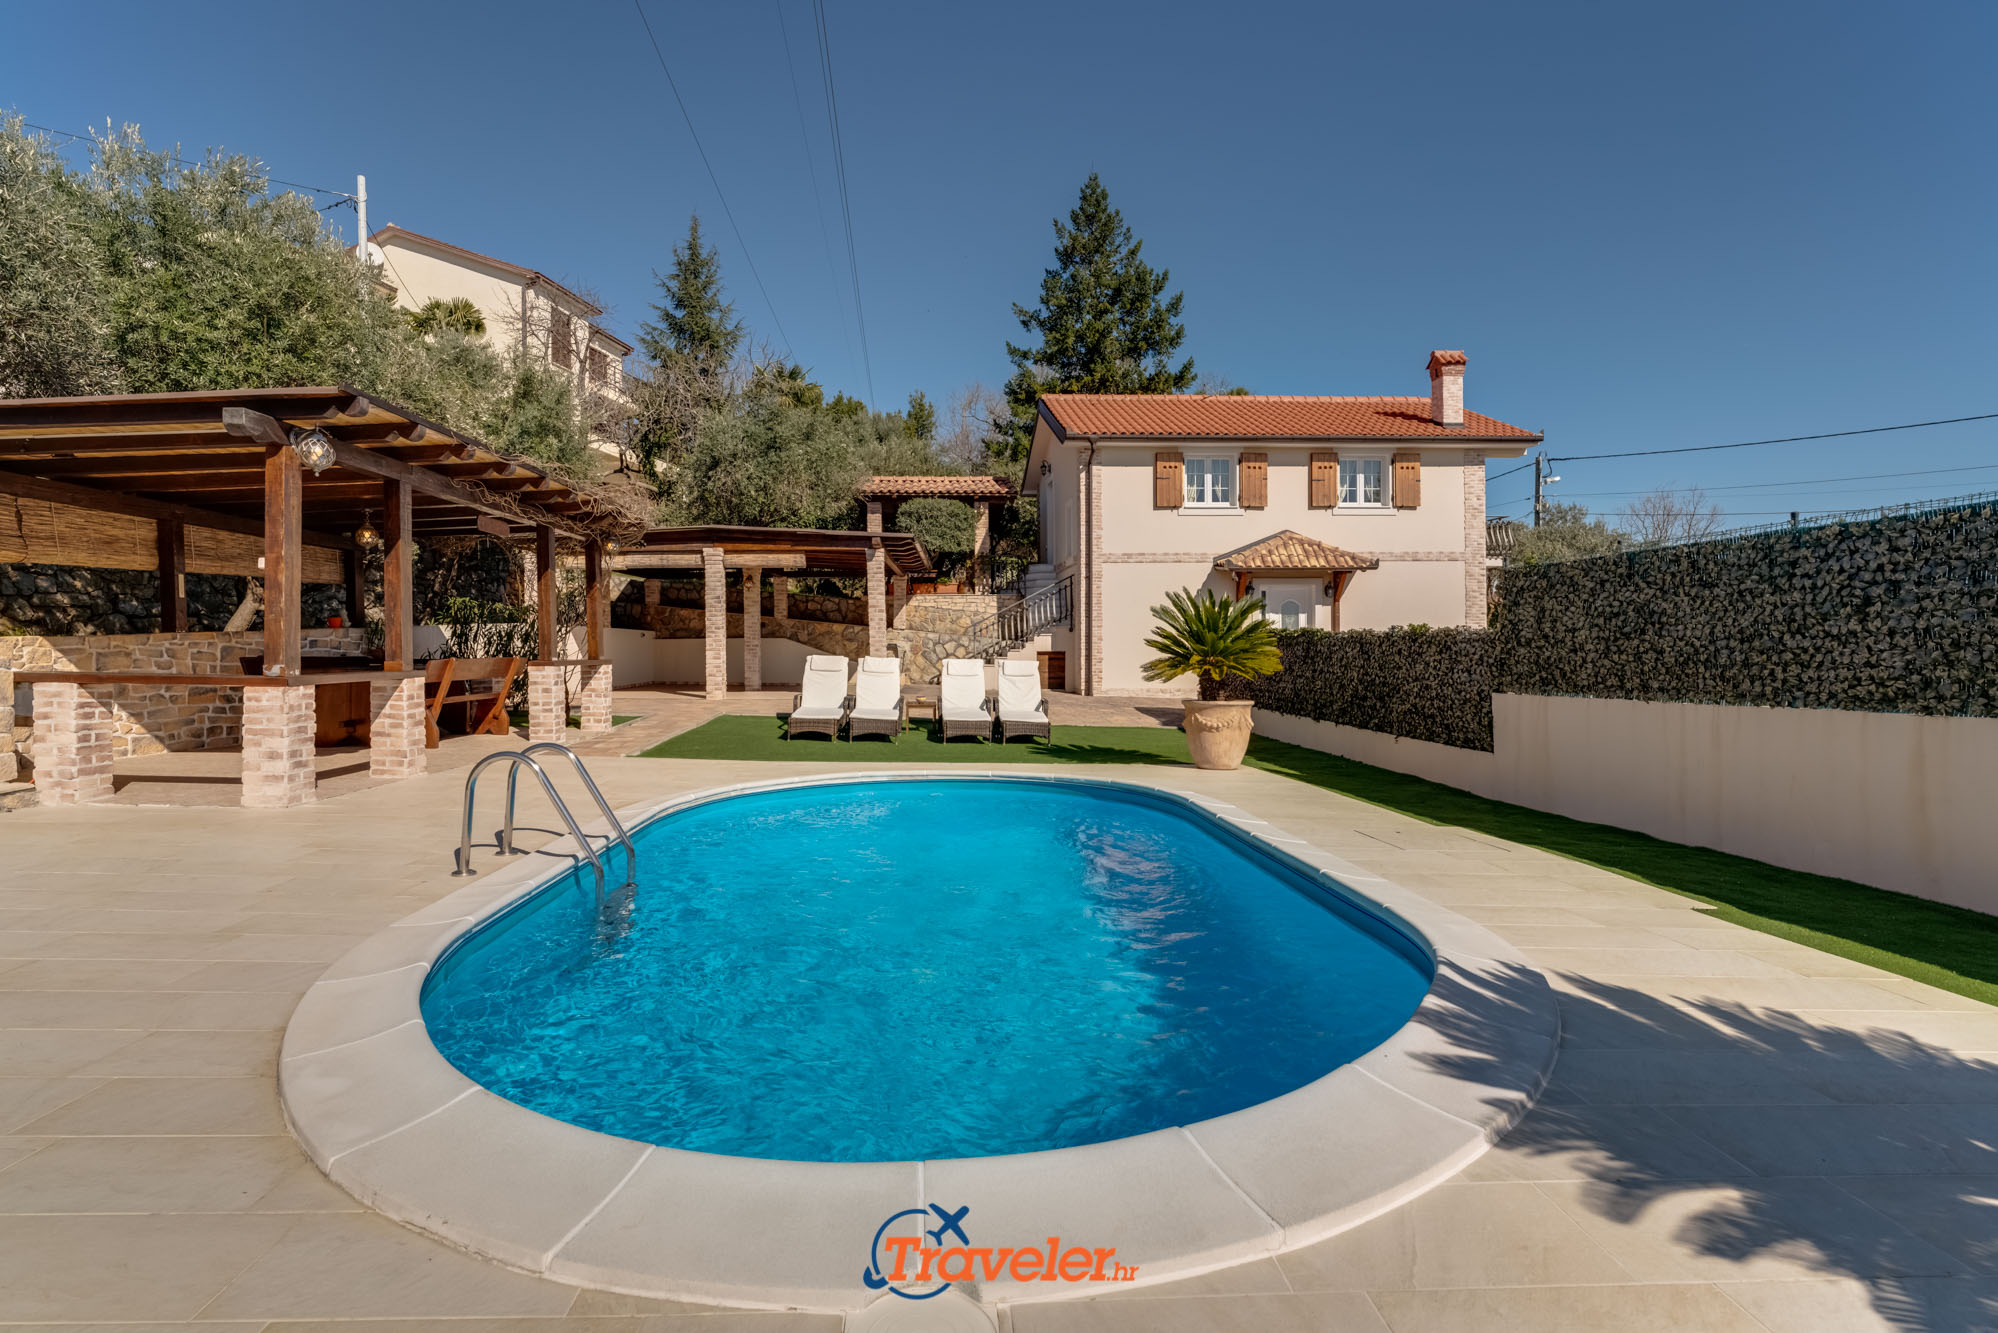 Ferienvilla mit Pool in Kroatien mit überdachter Terrasse